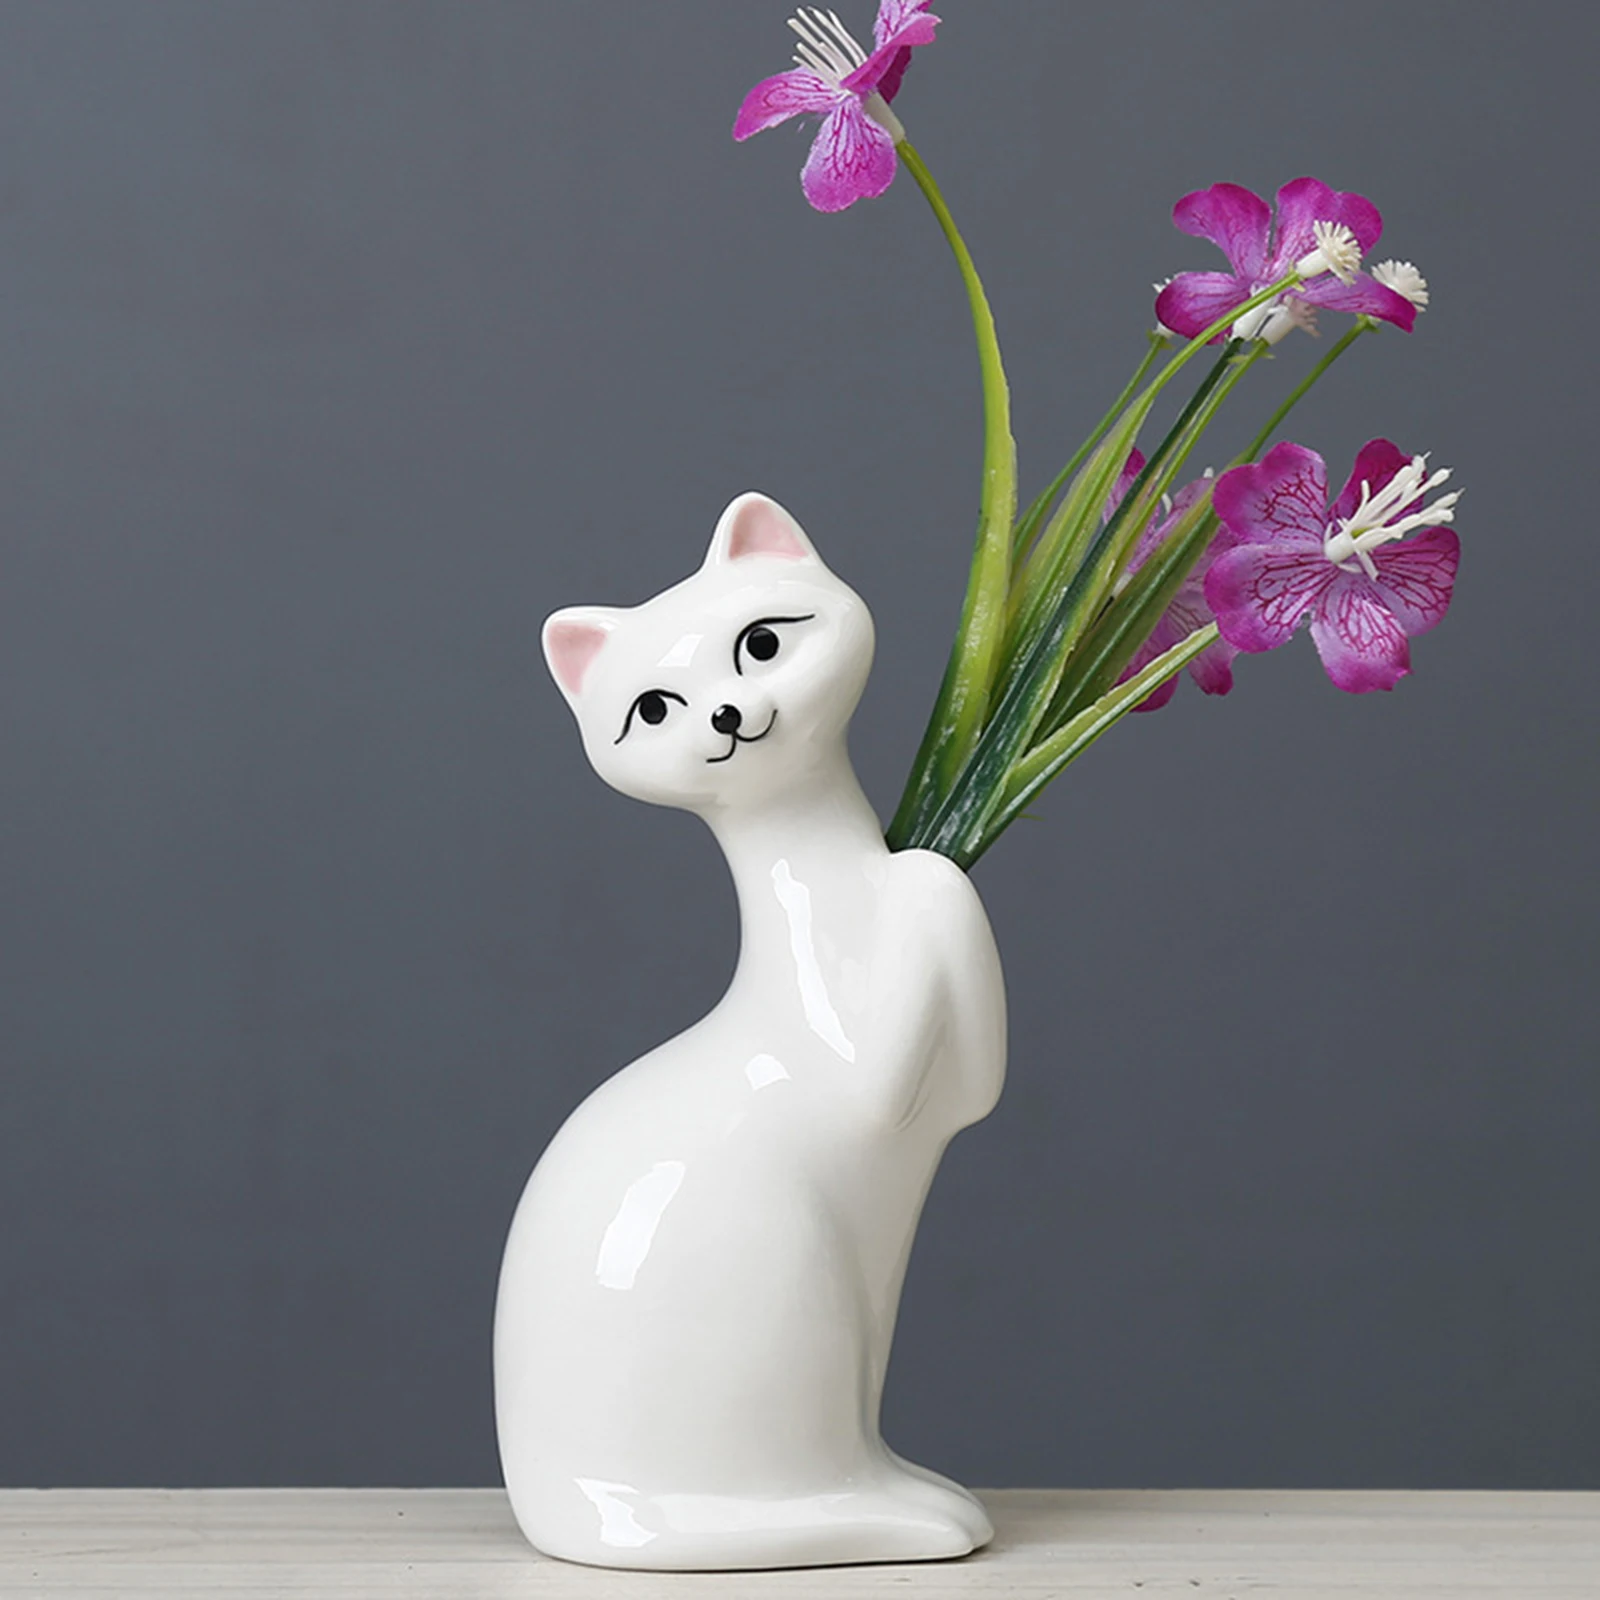 LOVIVER Cute Cat Ceramic Flower Vase Plants Pot Home Table Centerpieces 9.2x15.2cm 